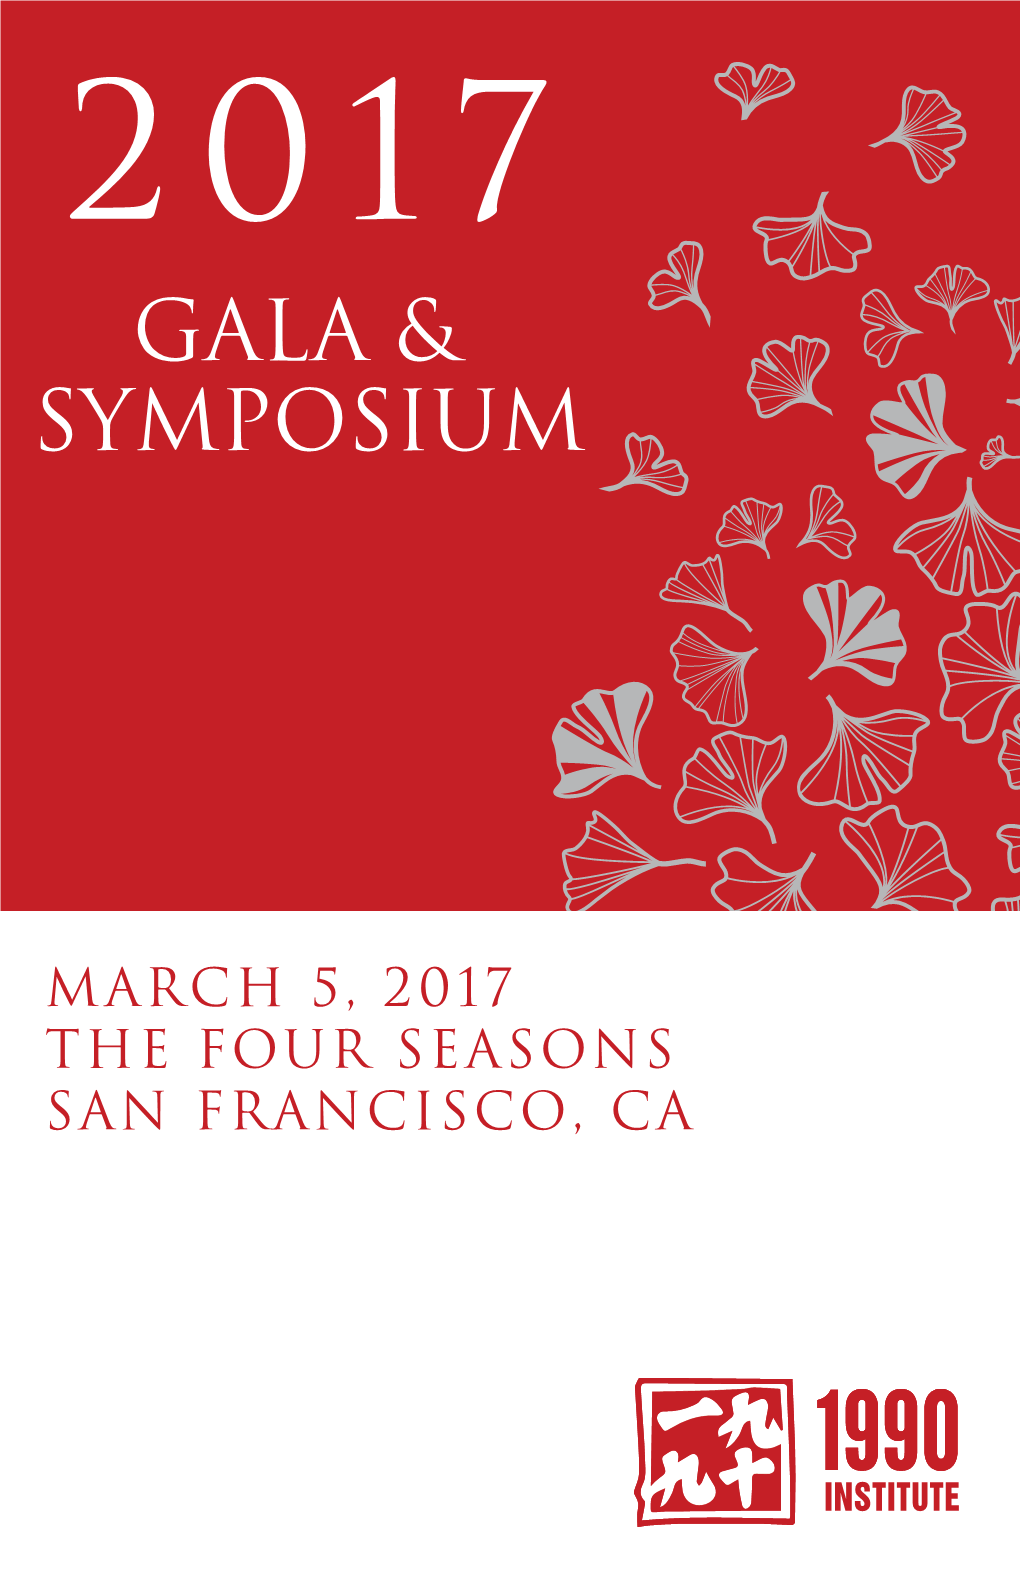 GALA & Symposium